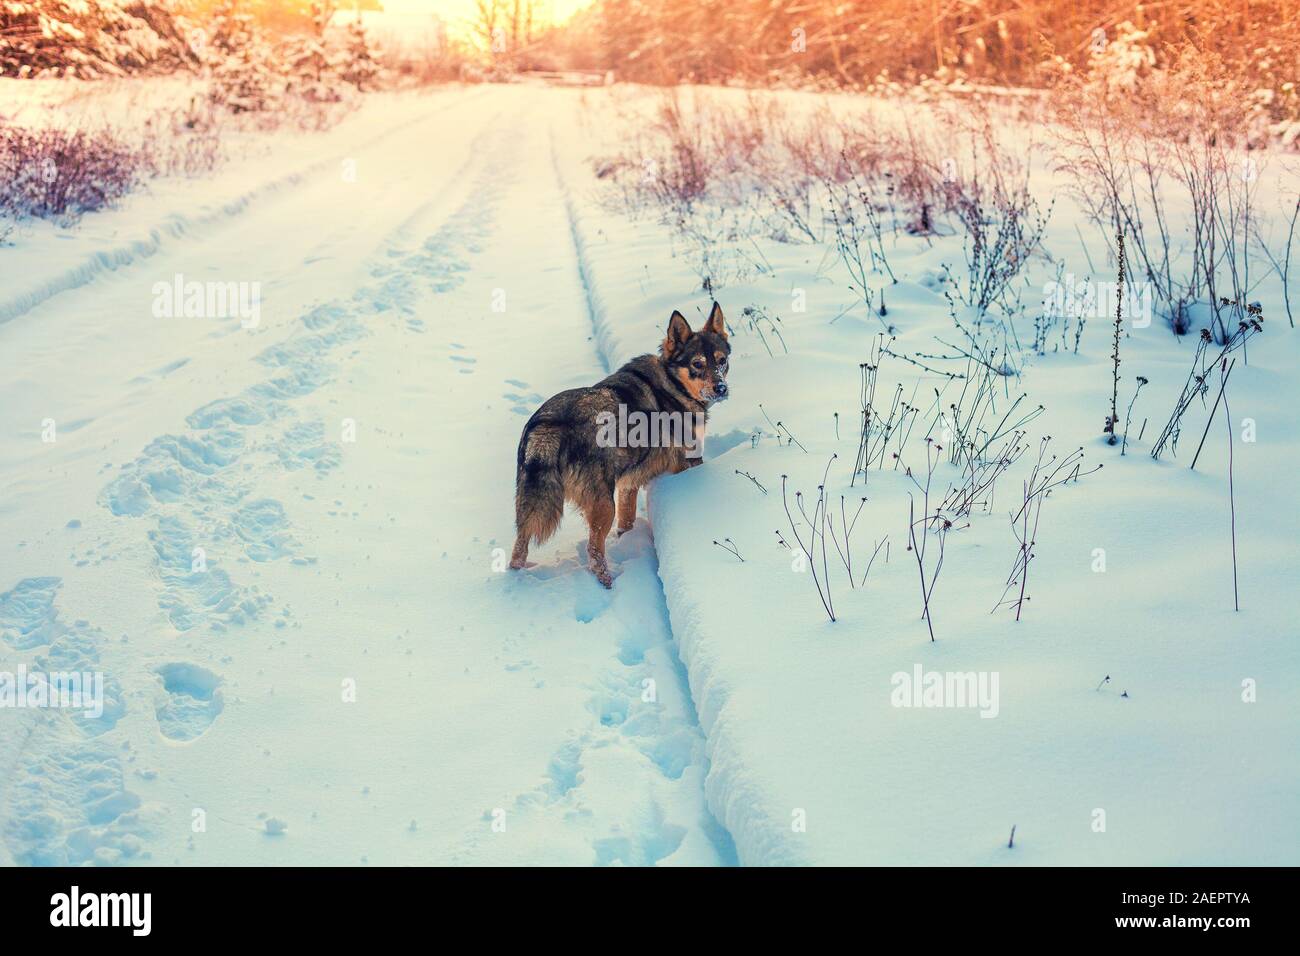 Hybride loup chien marche dans la campagne enneigée en hiver. Le chien reste à l'extérieur sur la route couverte de neige Banque D'Images